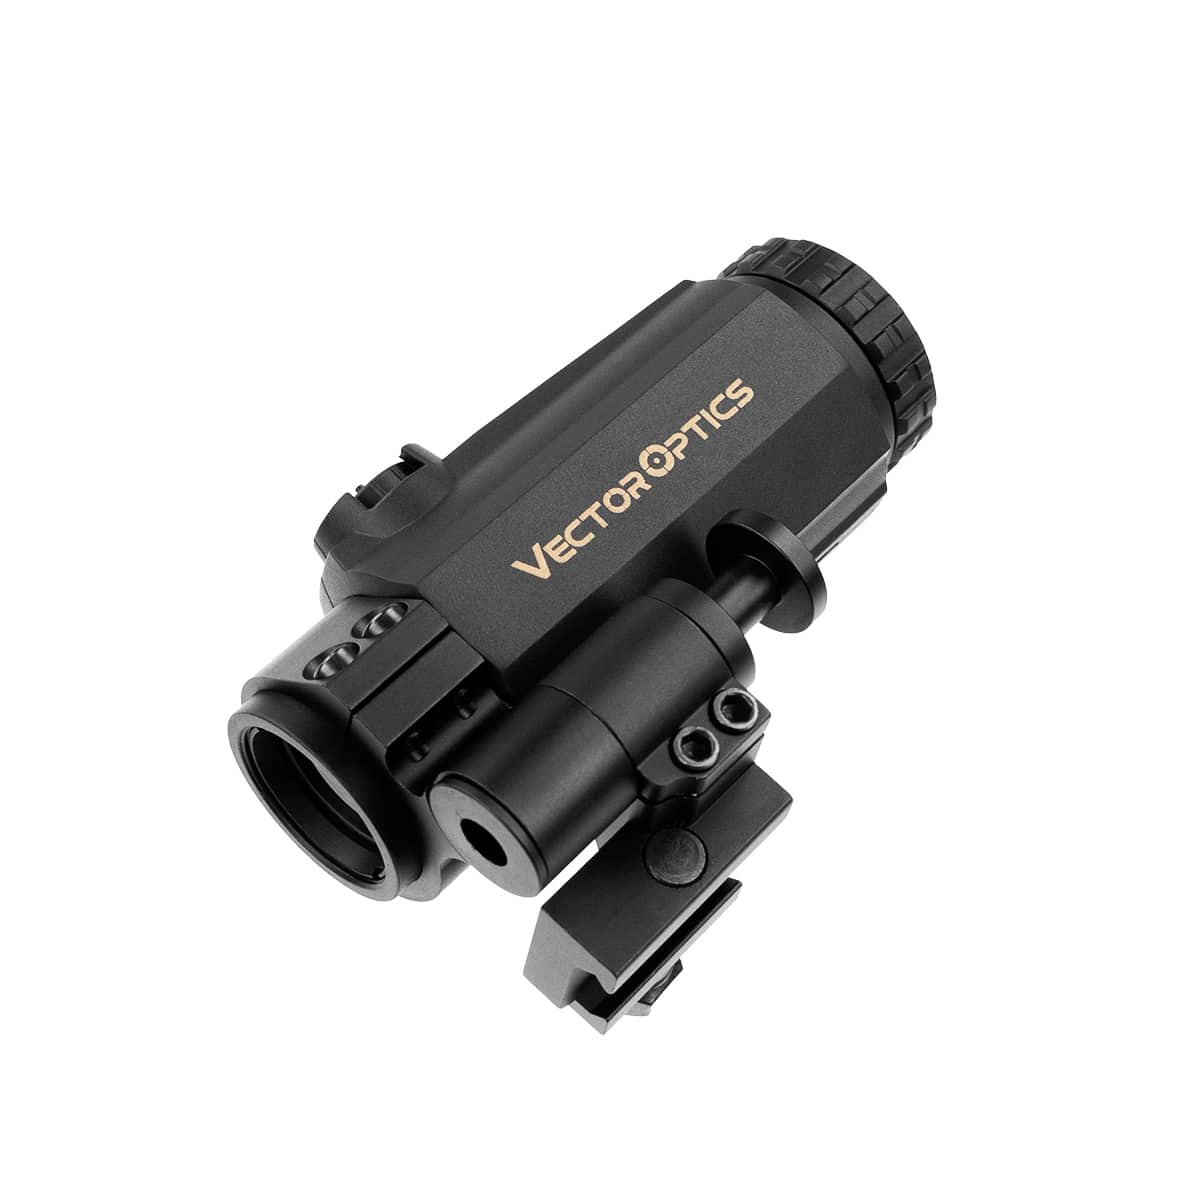 Magnifier Optic 3x - Novritsch